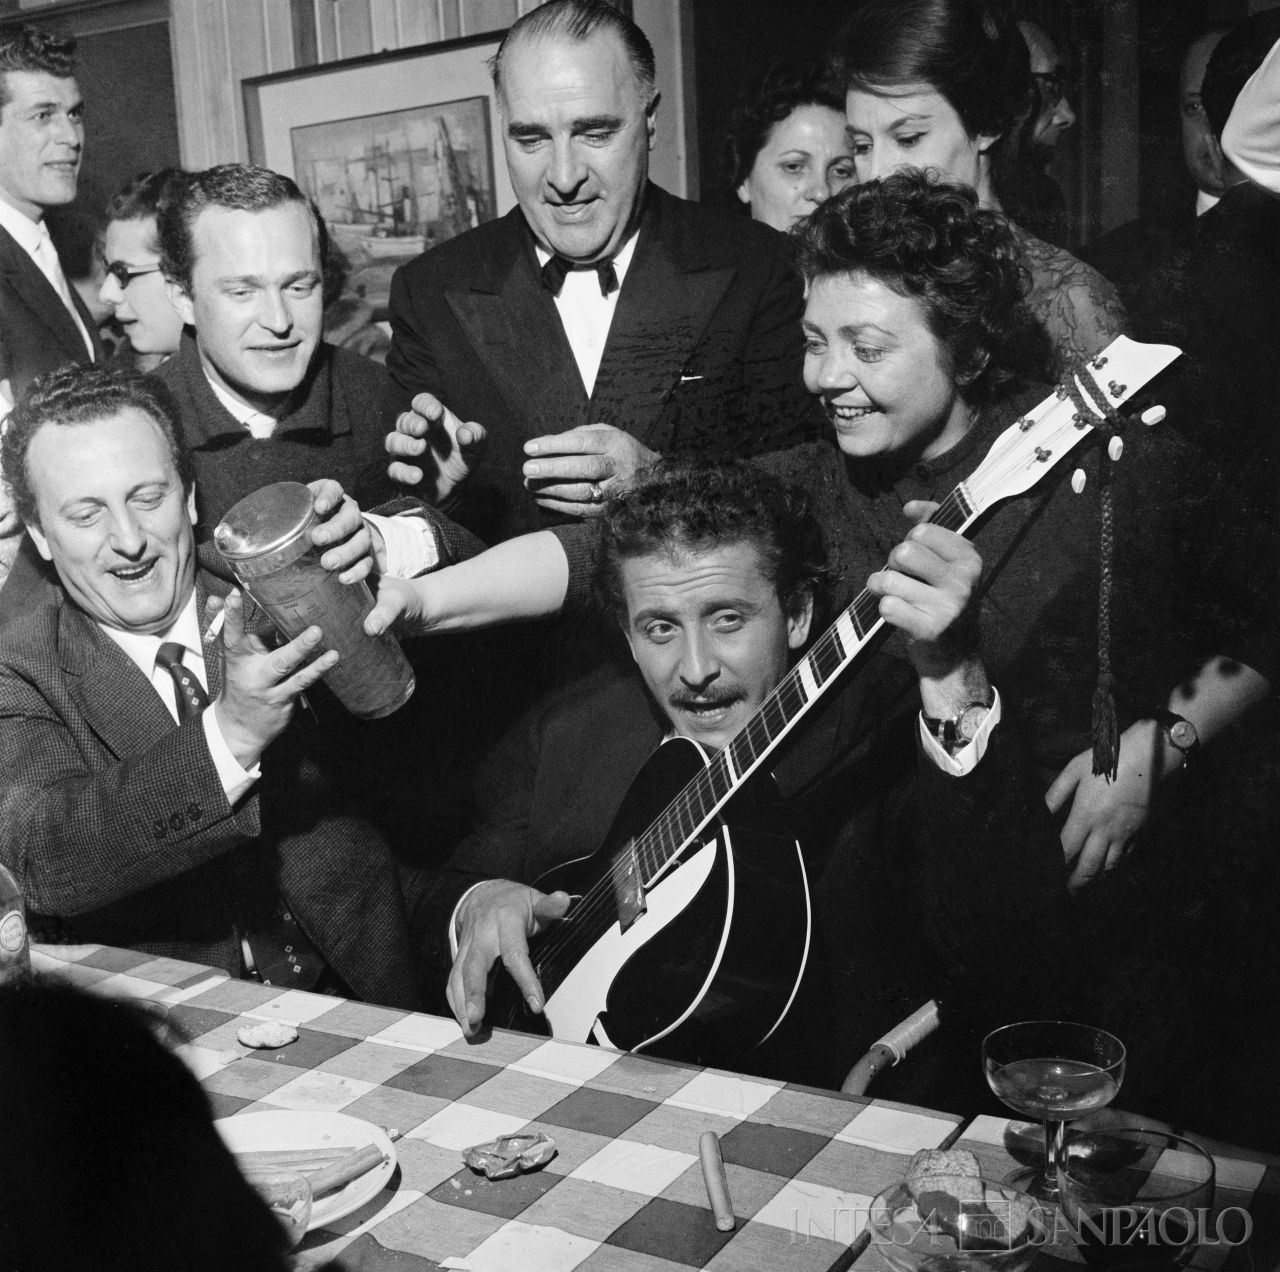 Domenico Modugno, con la chitarra, festeggia con amici, al ristorante, il Festival di Sanremo appena vinto insieme a Johnny Dorelli con la canzone "Piove"